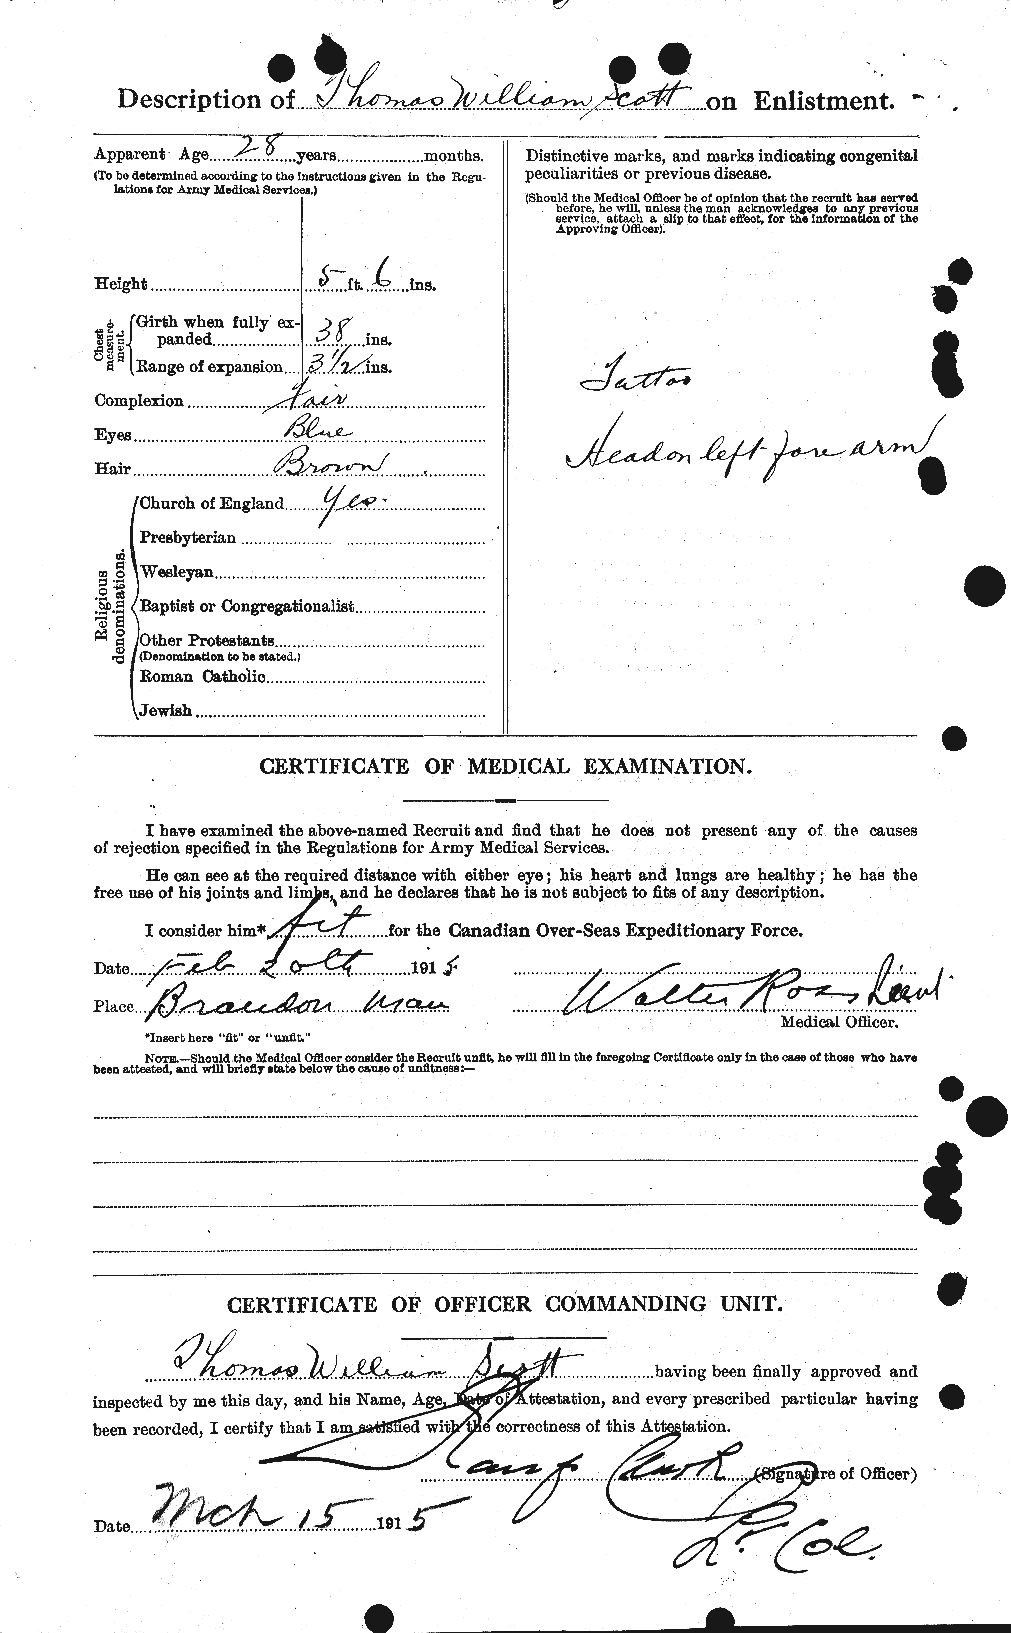 Dossiers du Personnel de la Première Guerre mondiale - CEC 088214b